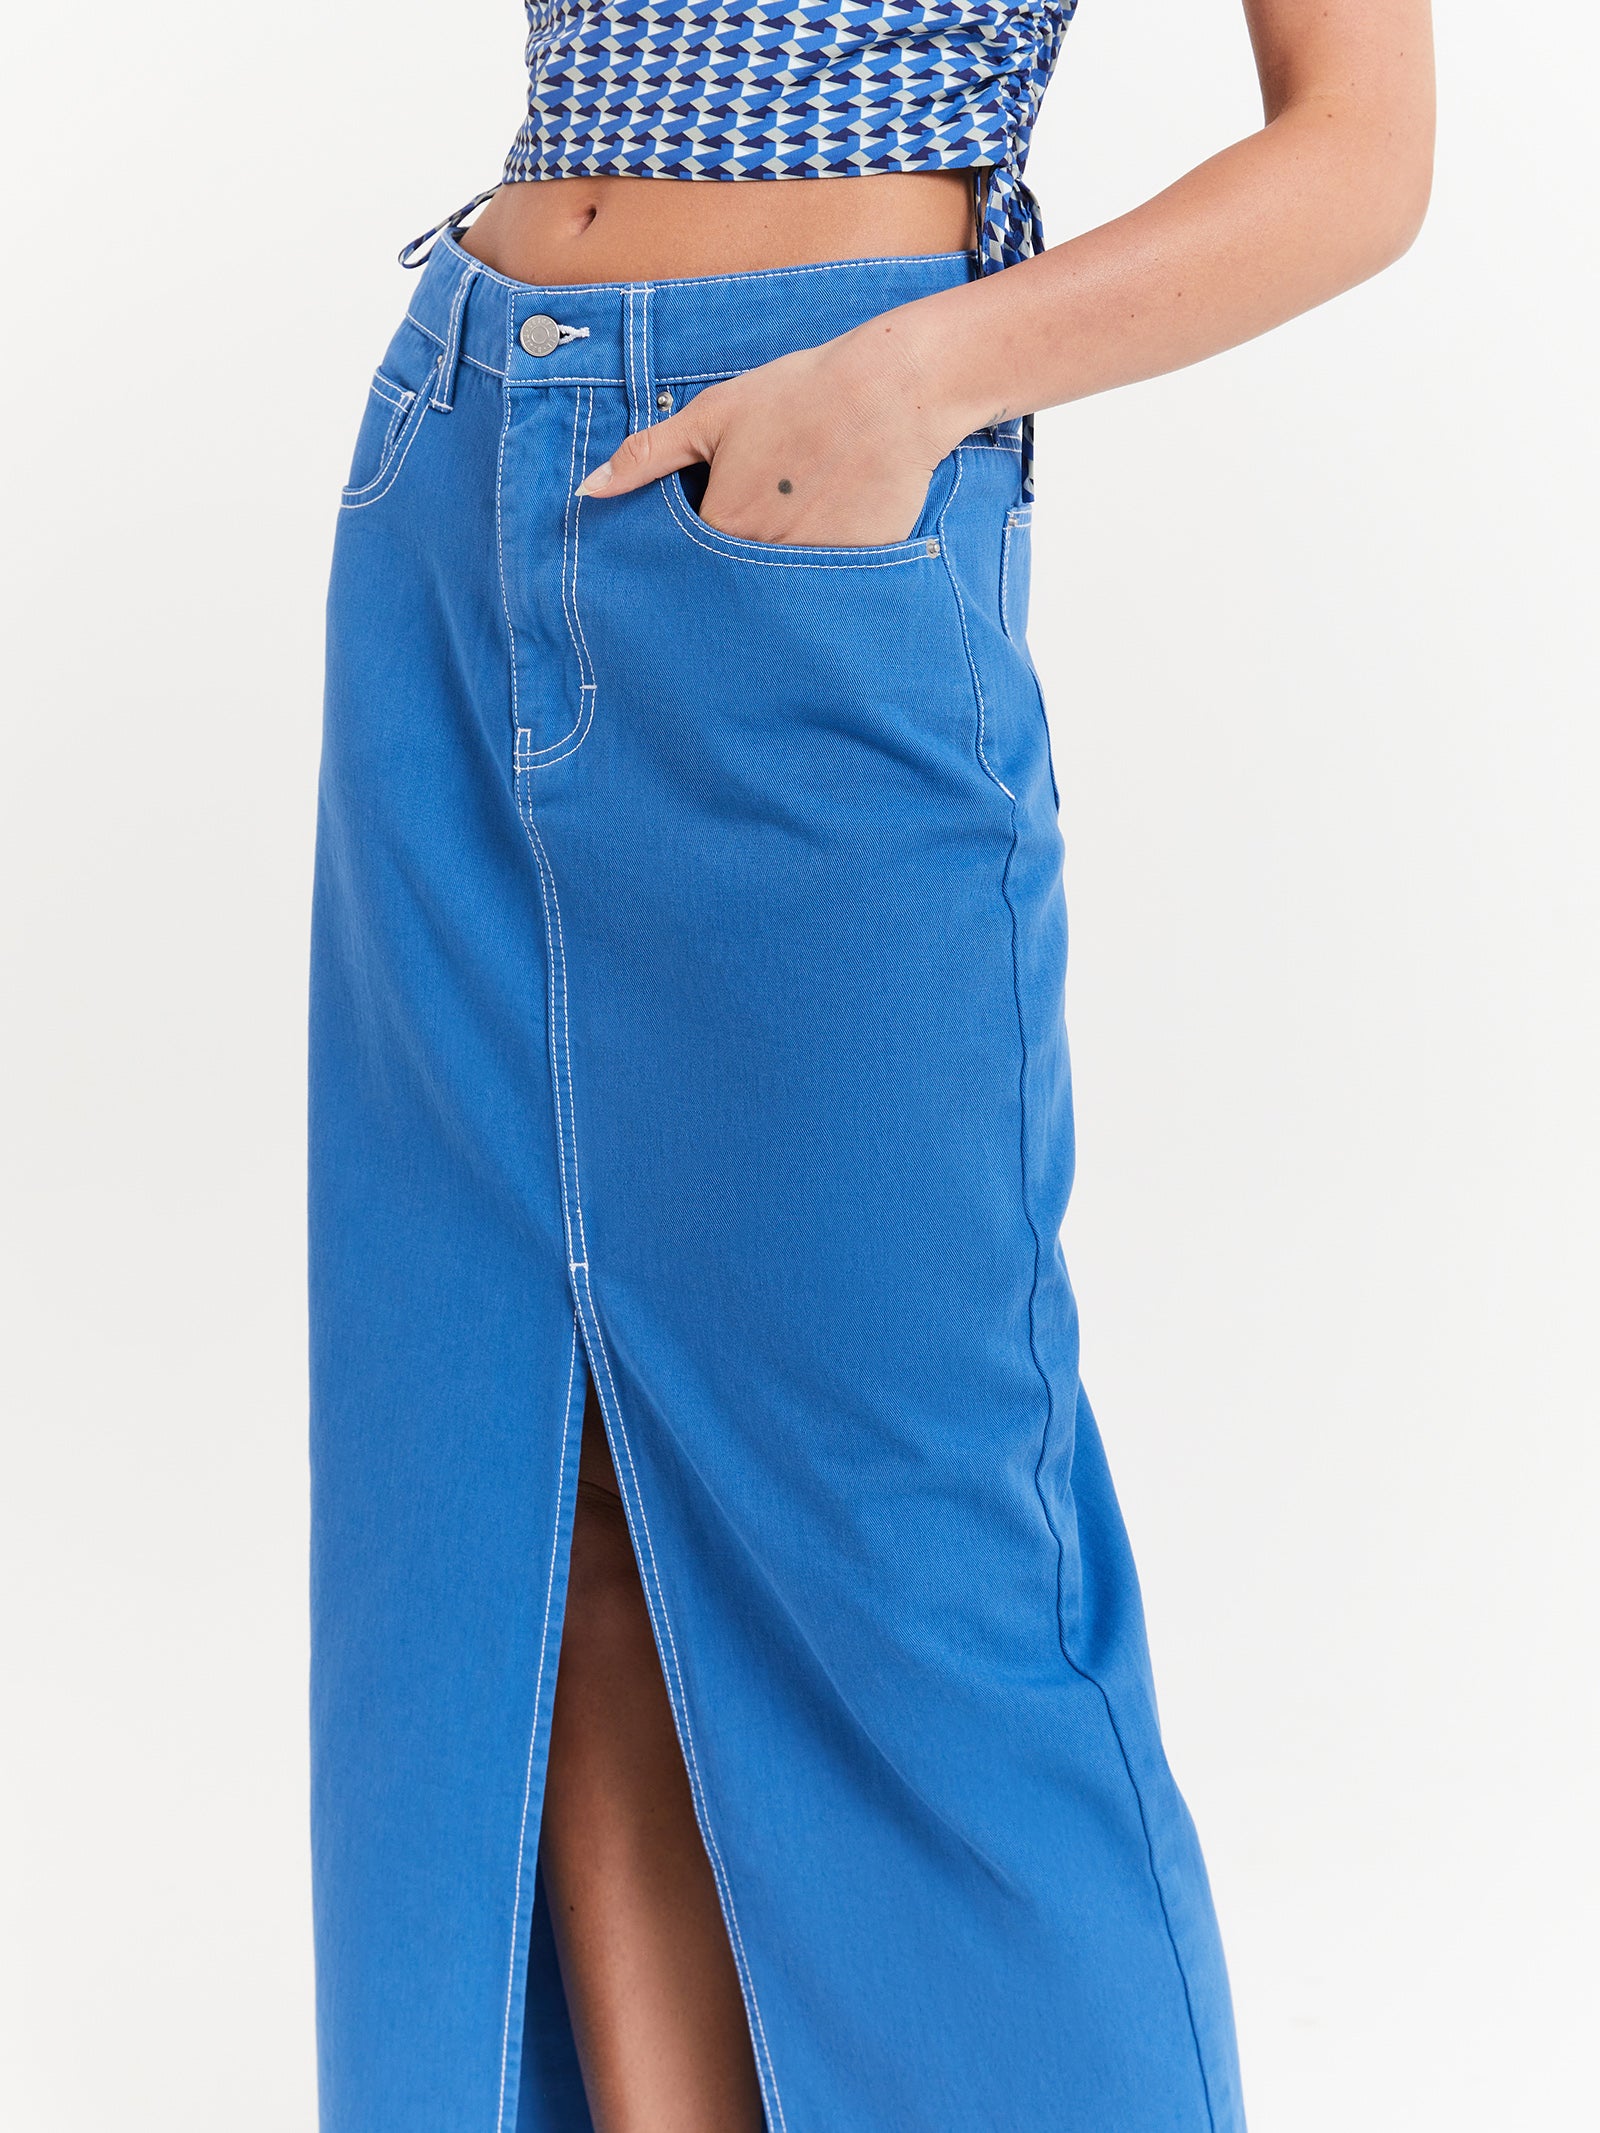 Celine Slit Maxi Skirt in Denim Blue